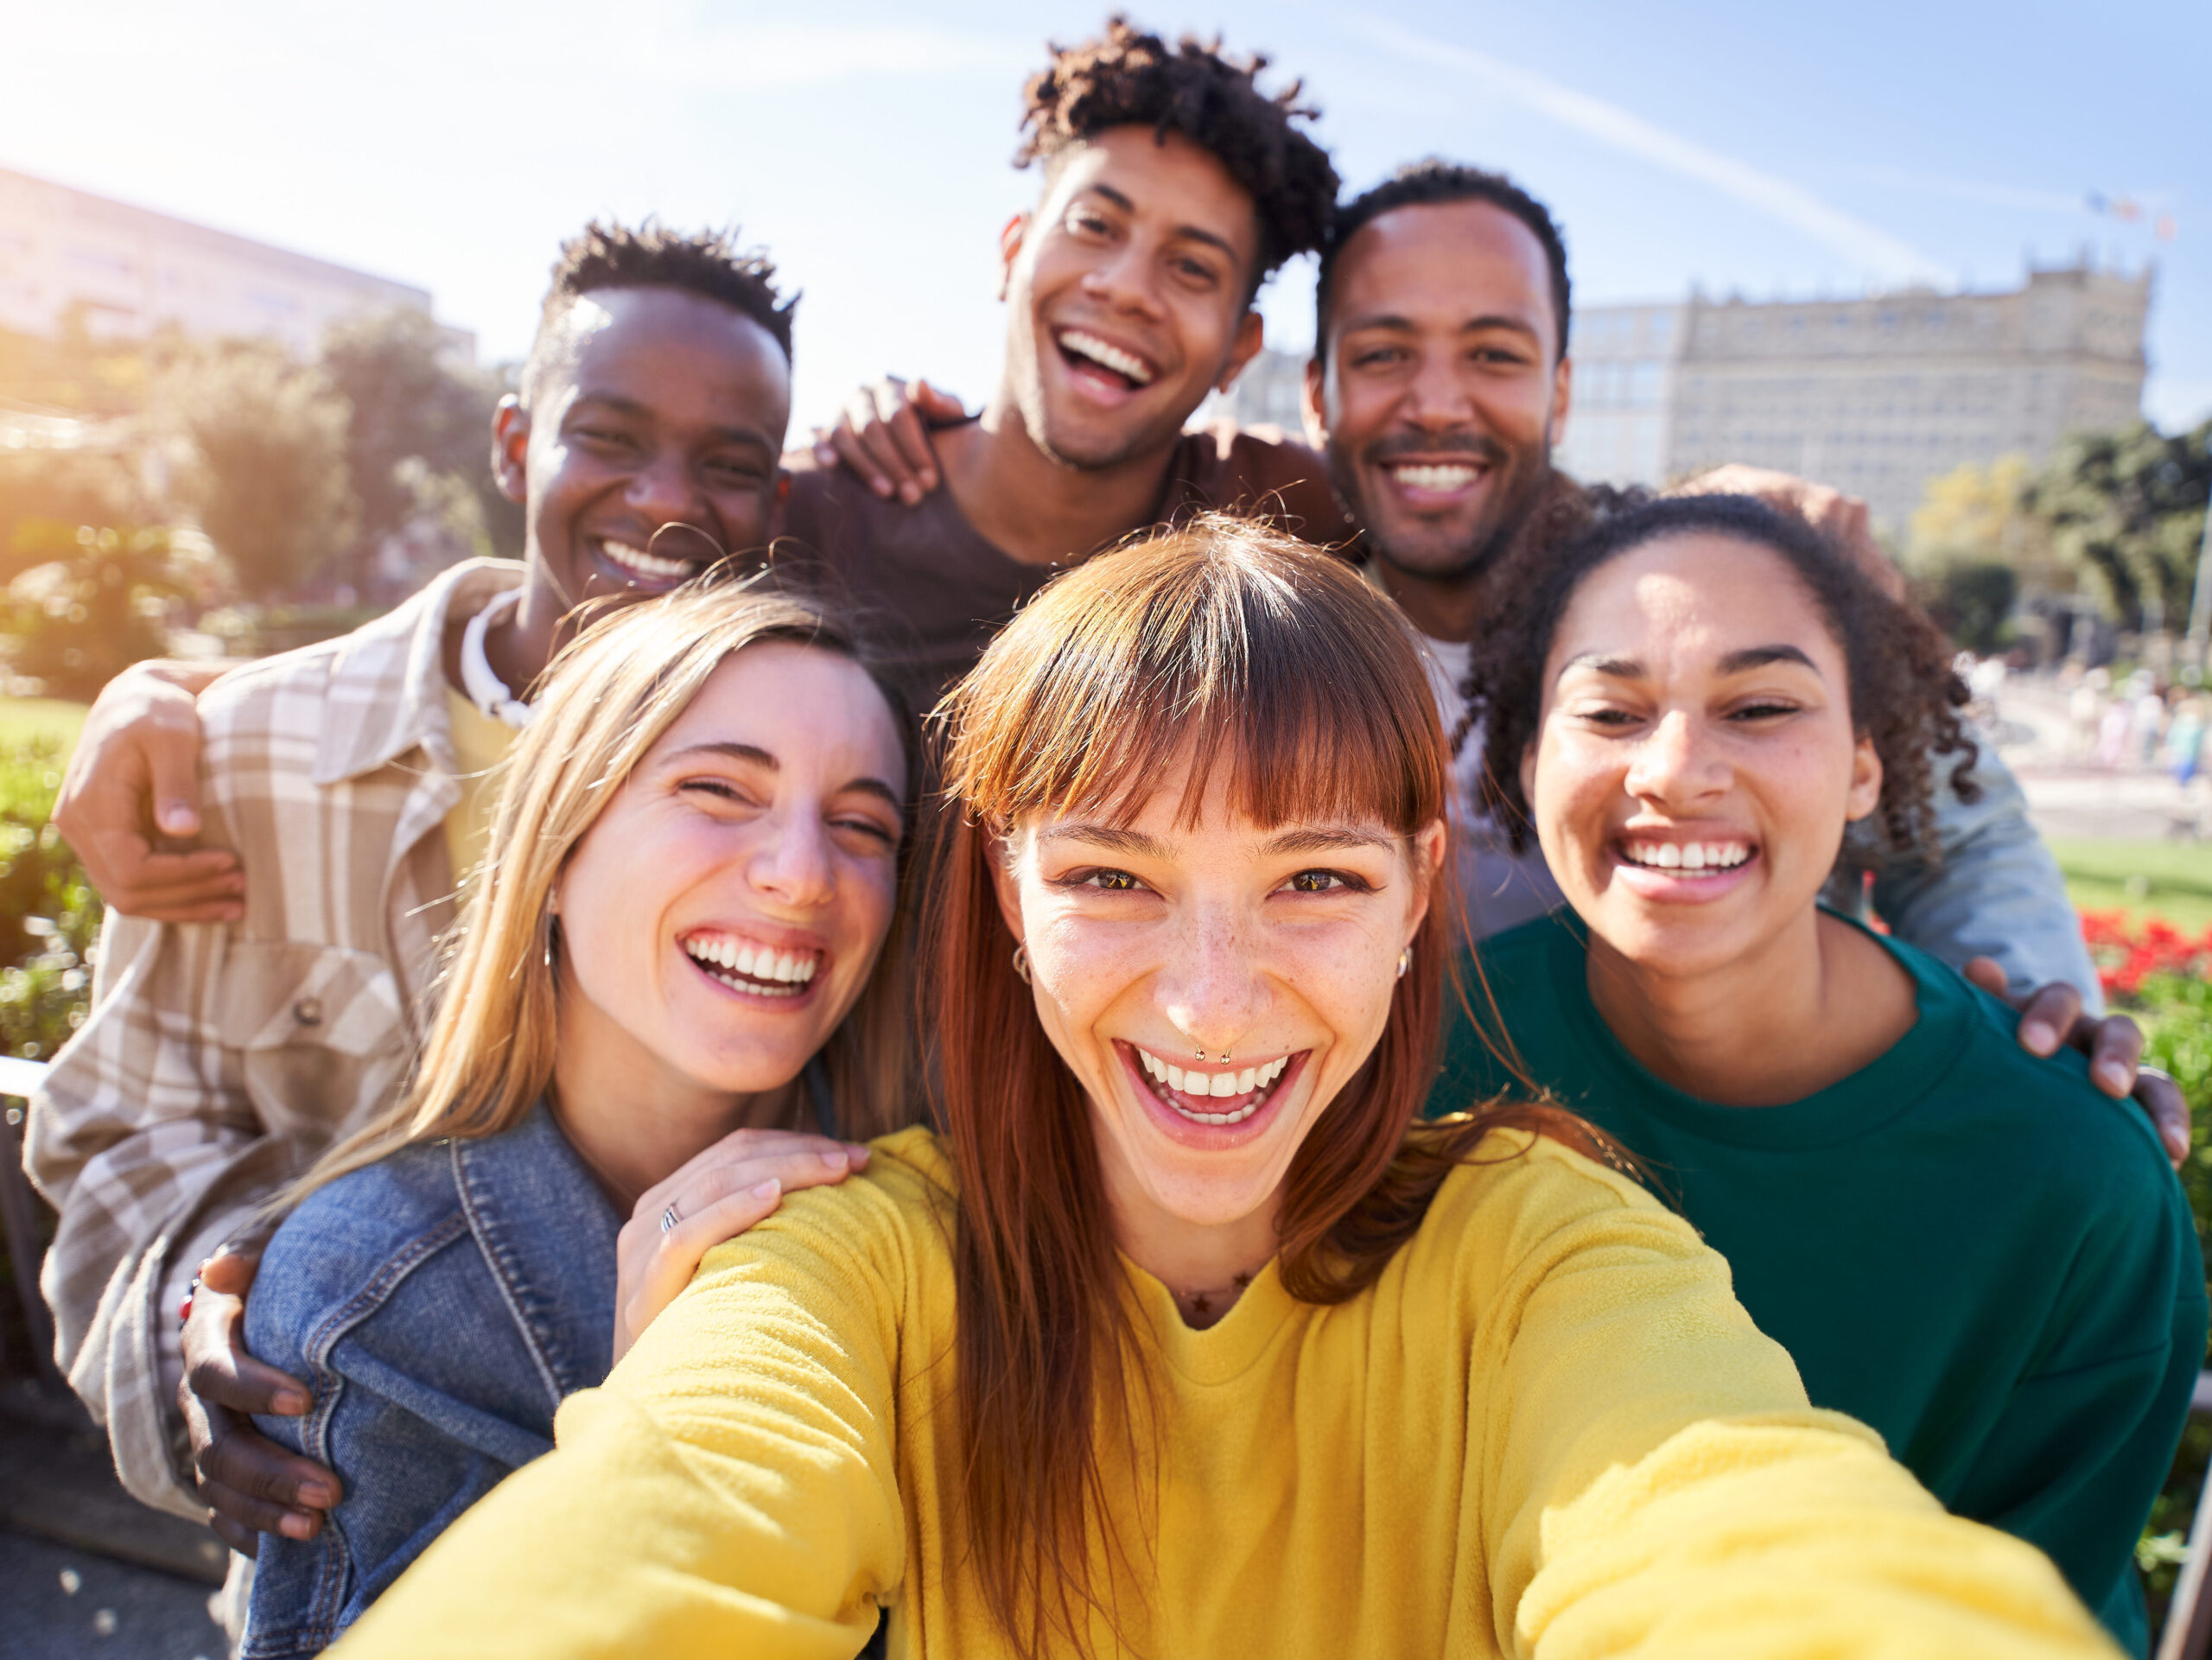 Gruppe von glücklichen Freunden, die an einem Frühlingstag für ein Selfie posieren, während sie gemeinsam im Freien feiern. Eine Gruppe multikultureller Freunde, die am Wochenende eine gute Zeit miteinander verbringen.